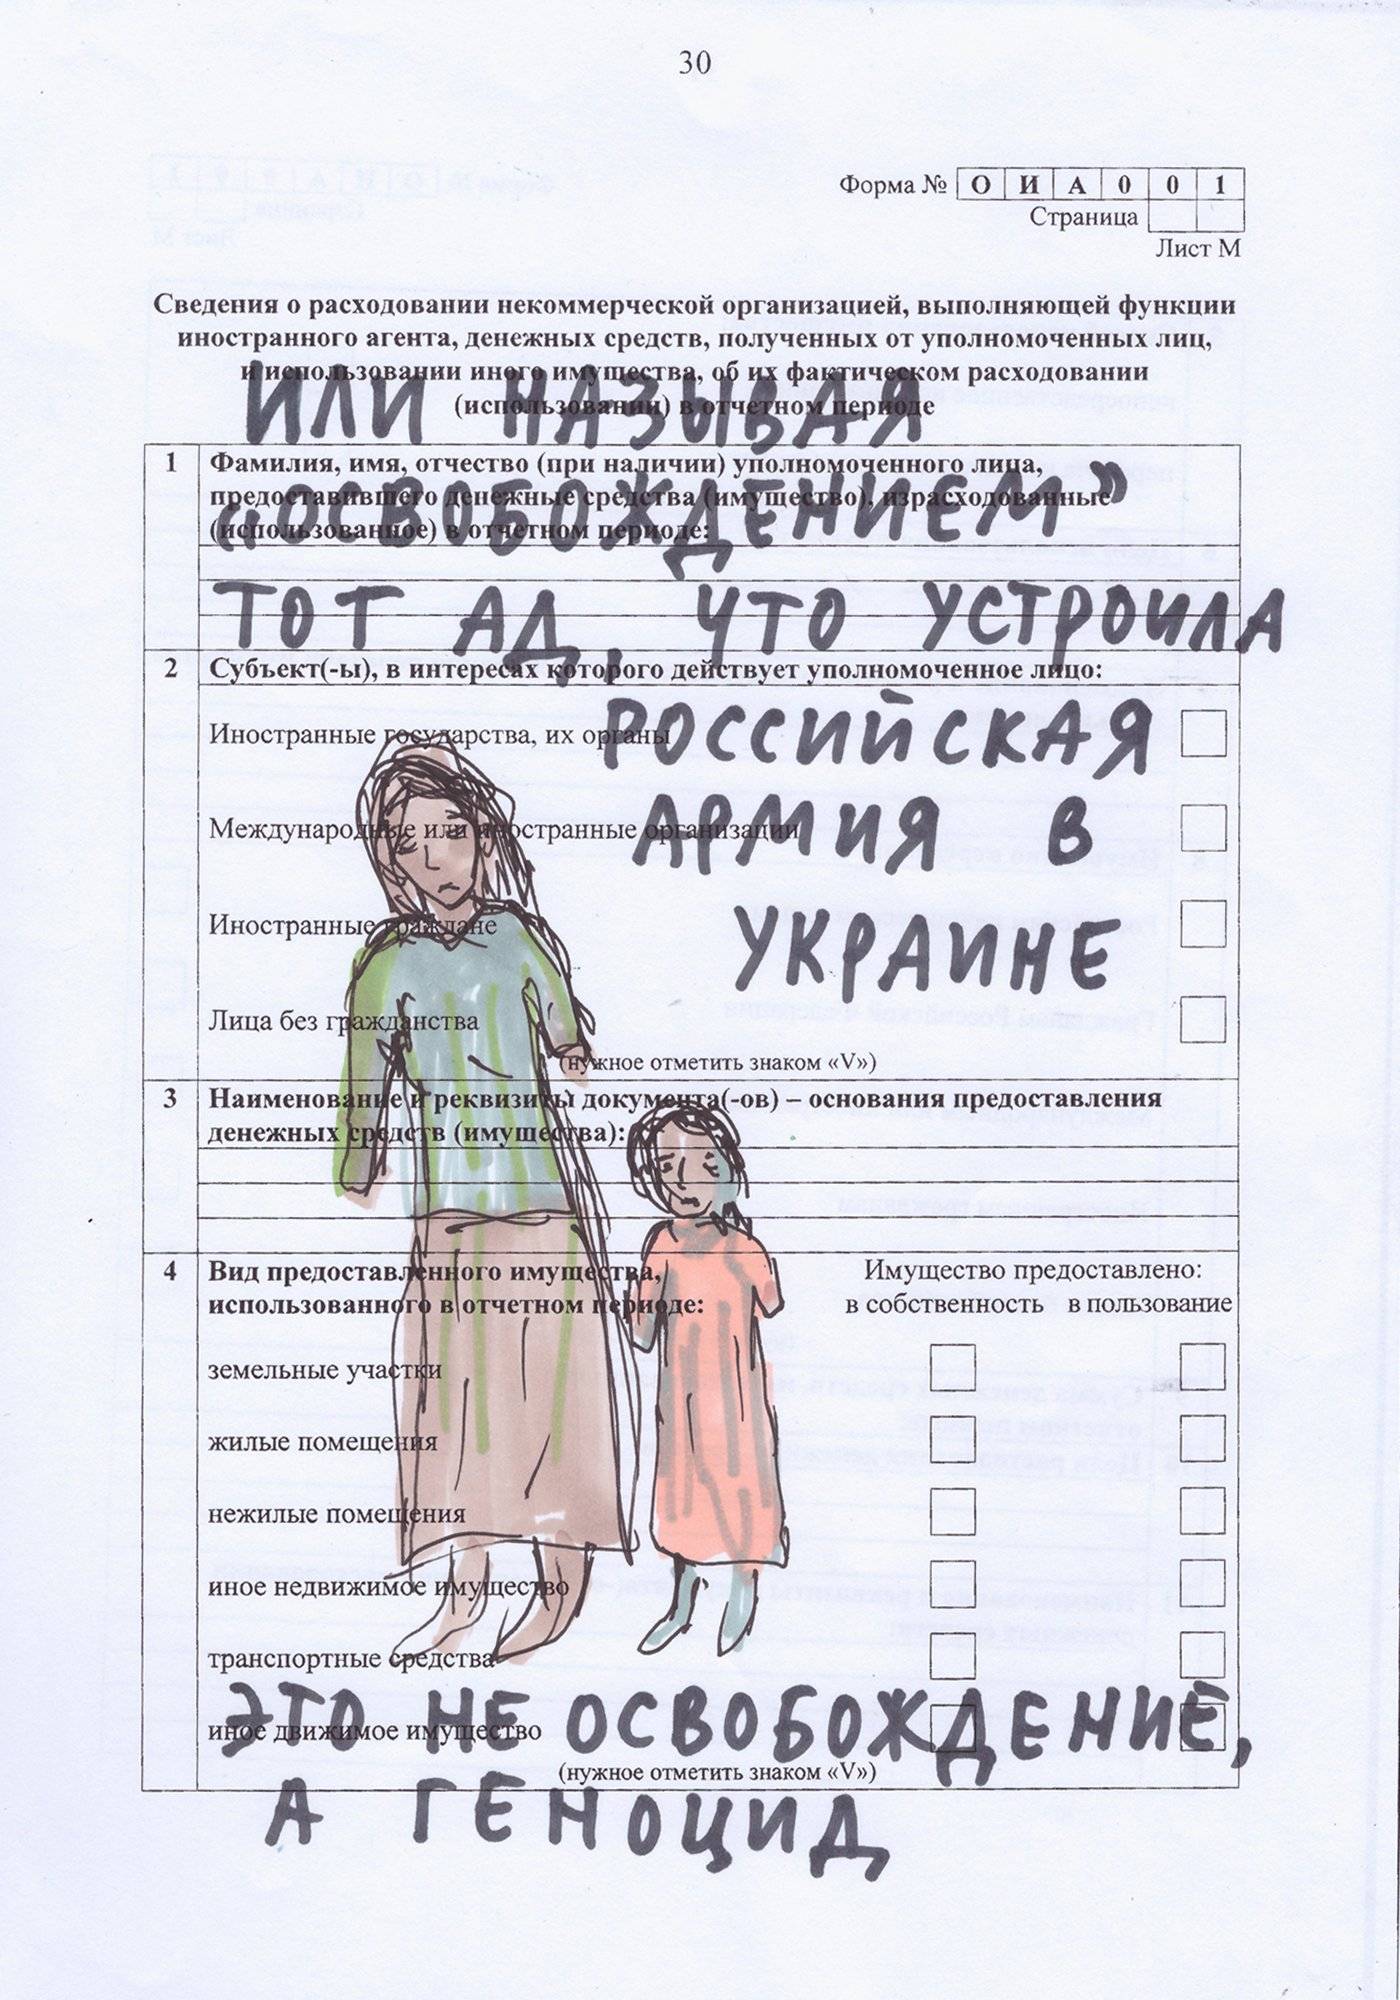 Rysunek na urzędowym dokumencie: kobieta z córką